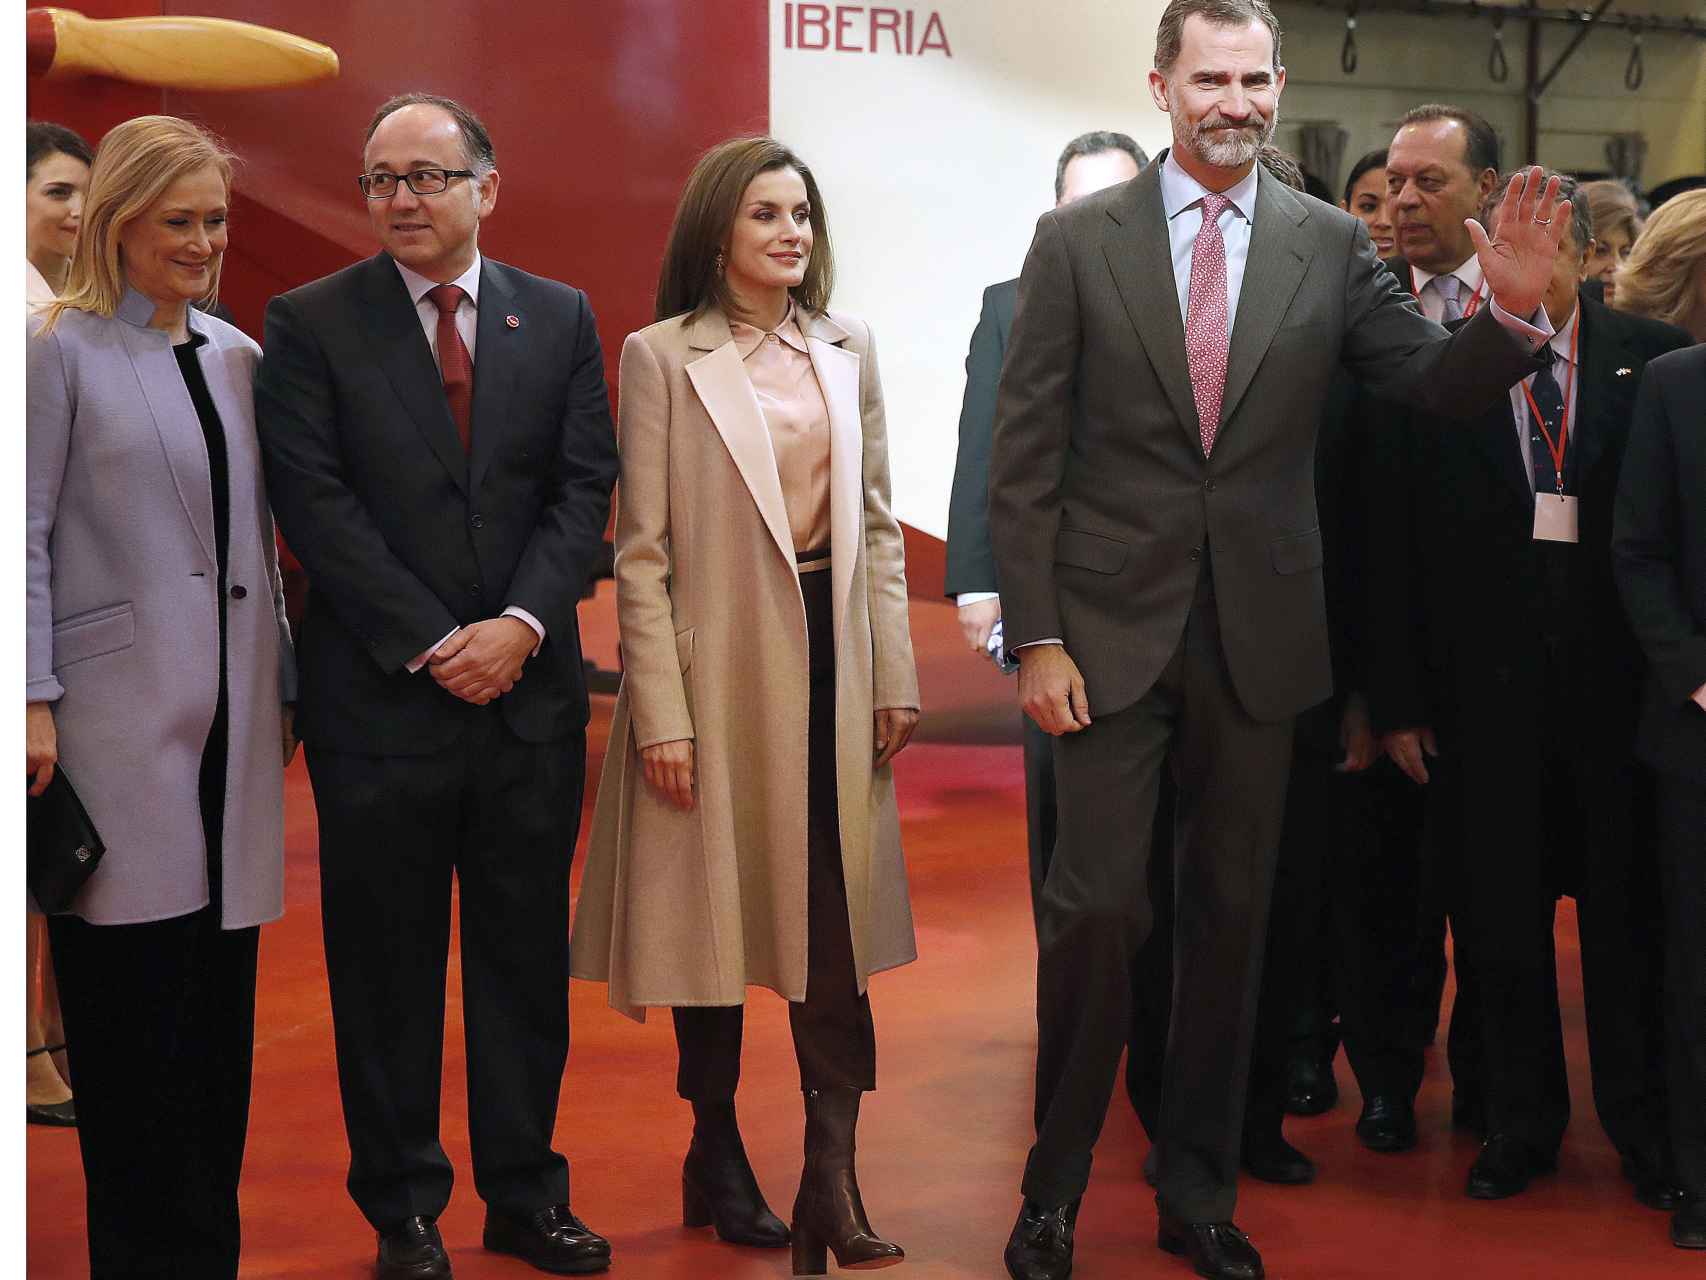 Los reyes, acompañados entre otros por la presidenta de la comunidad de Madrid, en FITUR.